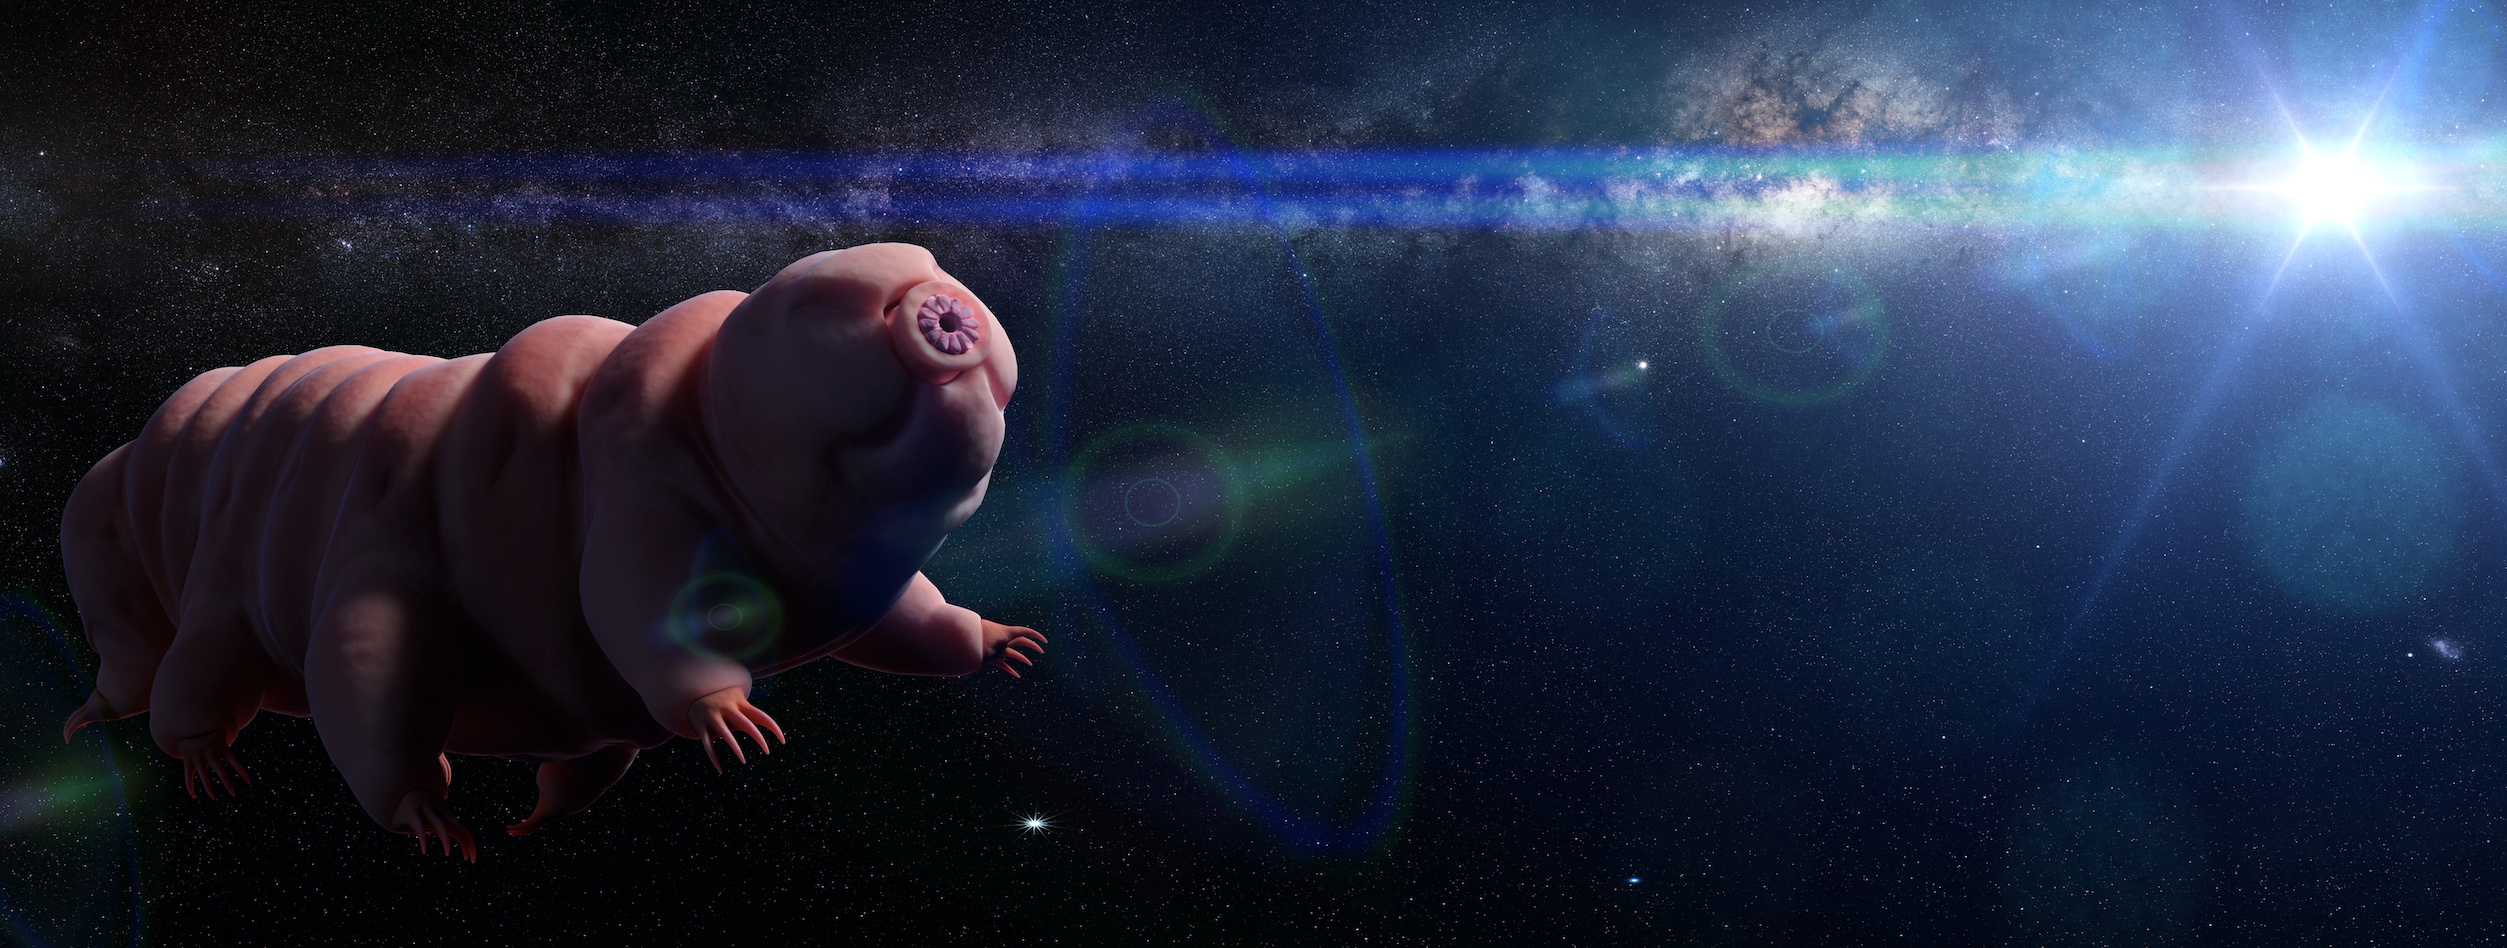 Des tardigrades seront-ils les premiers êtres vivants issus de la Terre à quitter le Système solaire. © dottedyeti, Adobe Stock